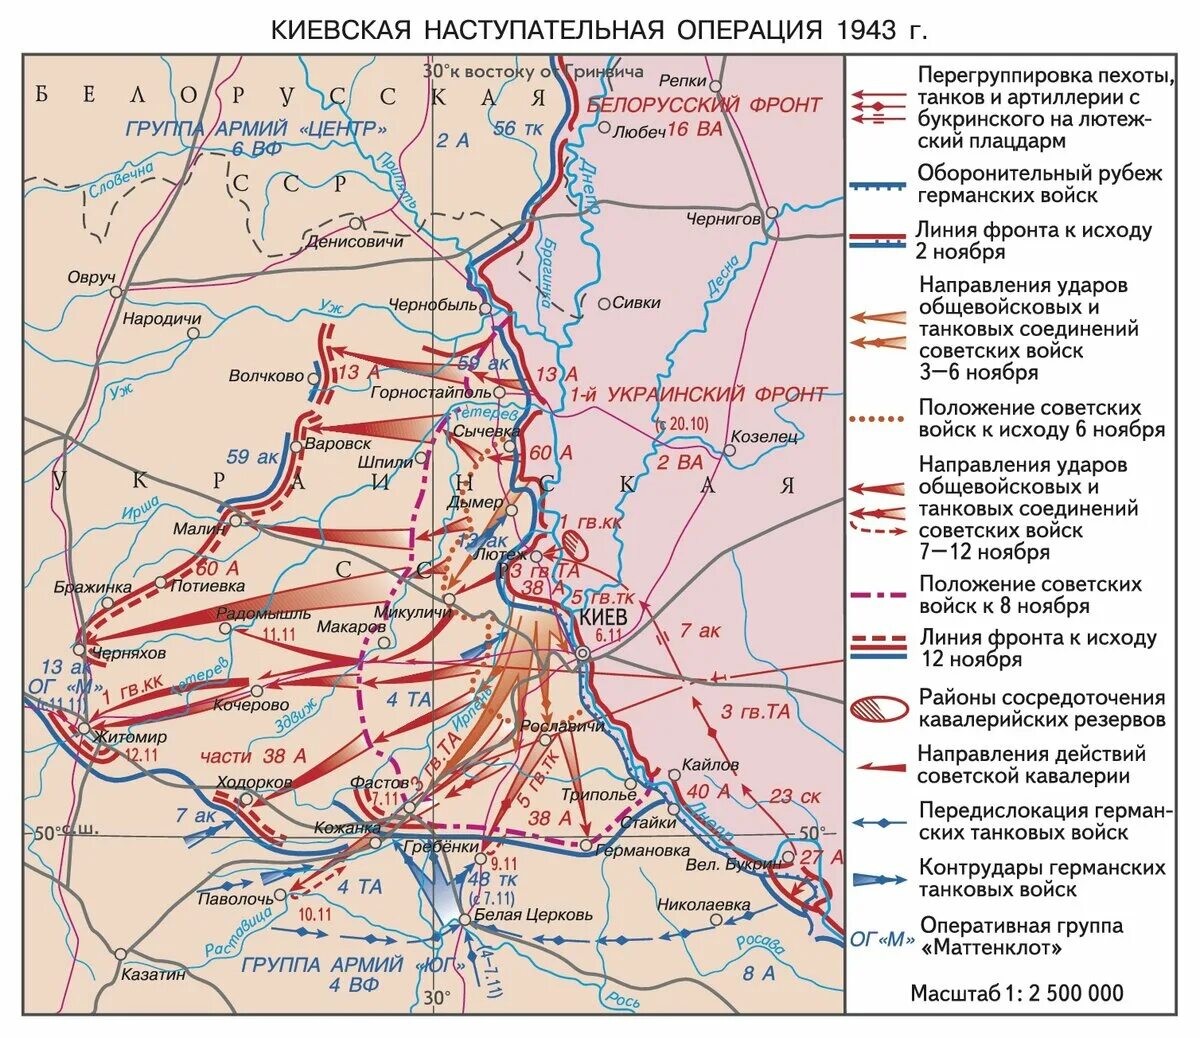 1944 события операции. Киевская стратегическая наступательная операция 3-13 ноября 1943 г.. Киевская оборонительная операция 1943. Киевская оборонительная операция 13 ноября 23 декабря 1943. Киевская оборонительная операция 1941 года.